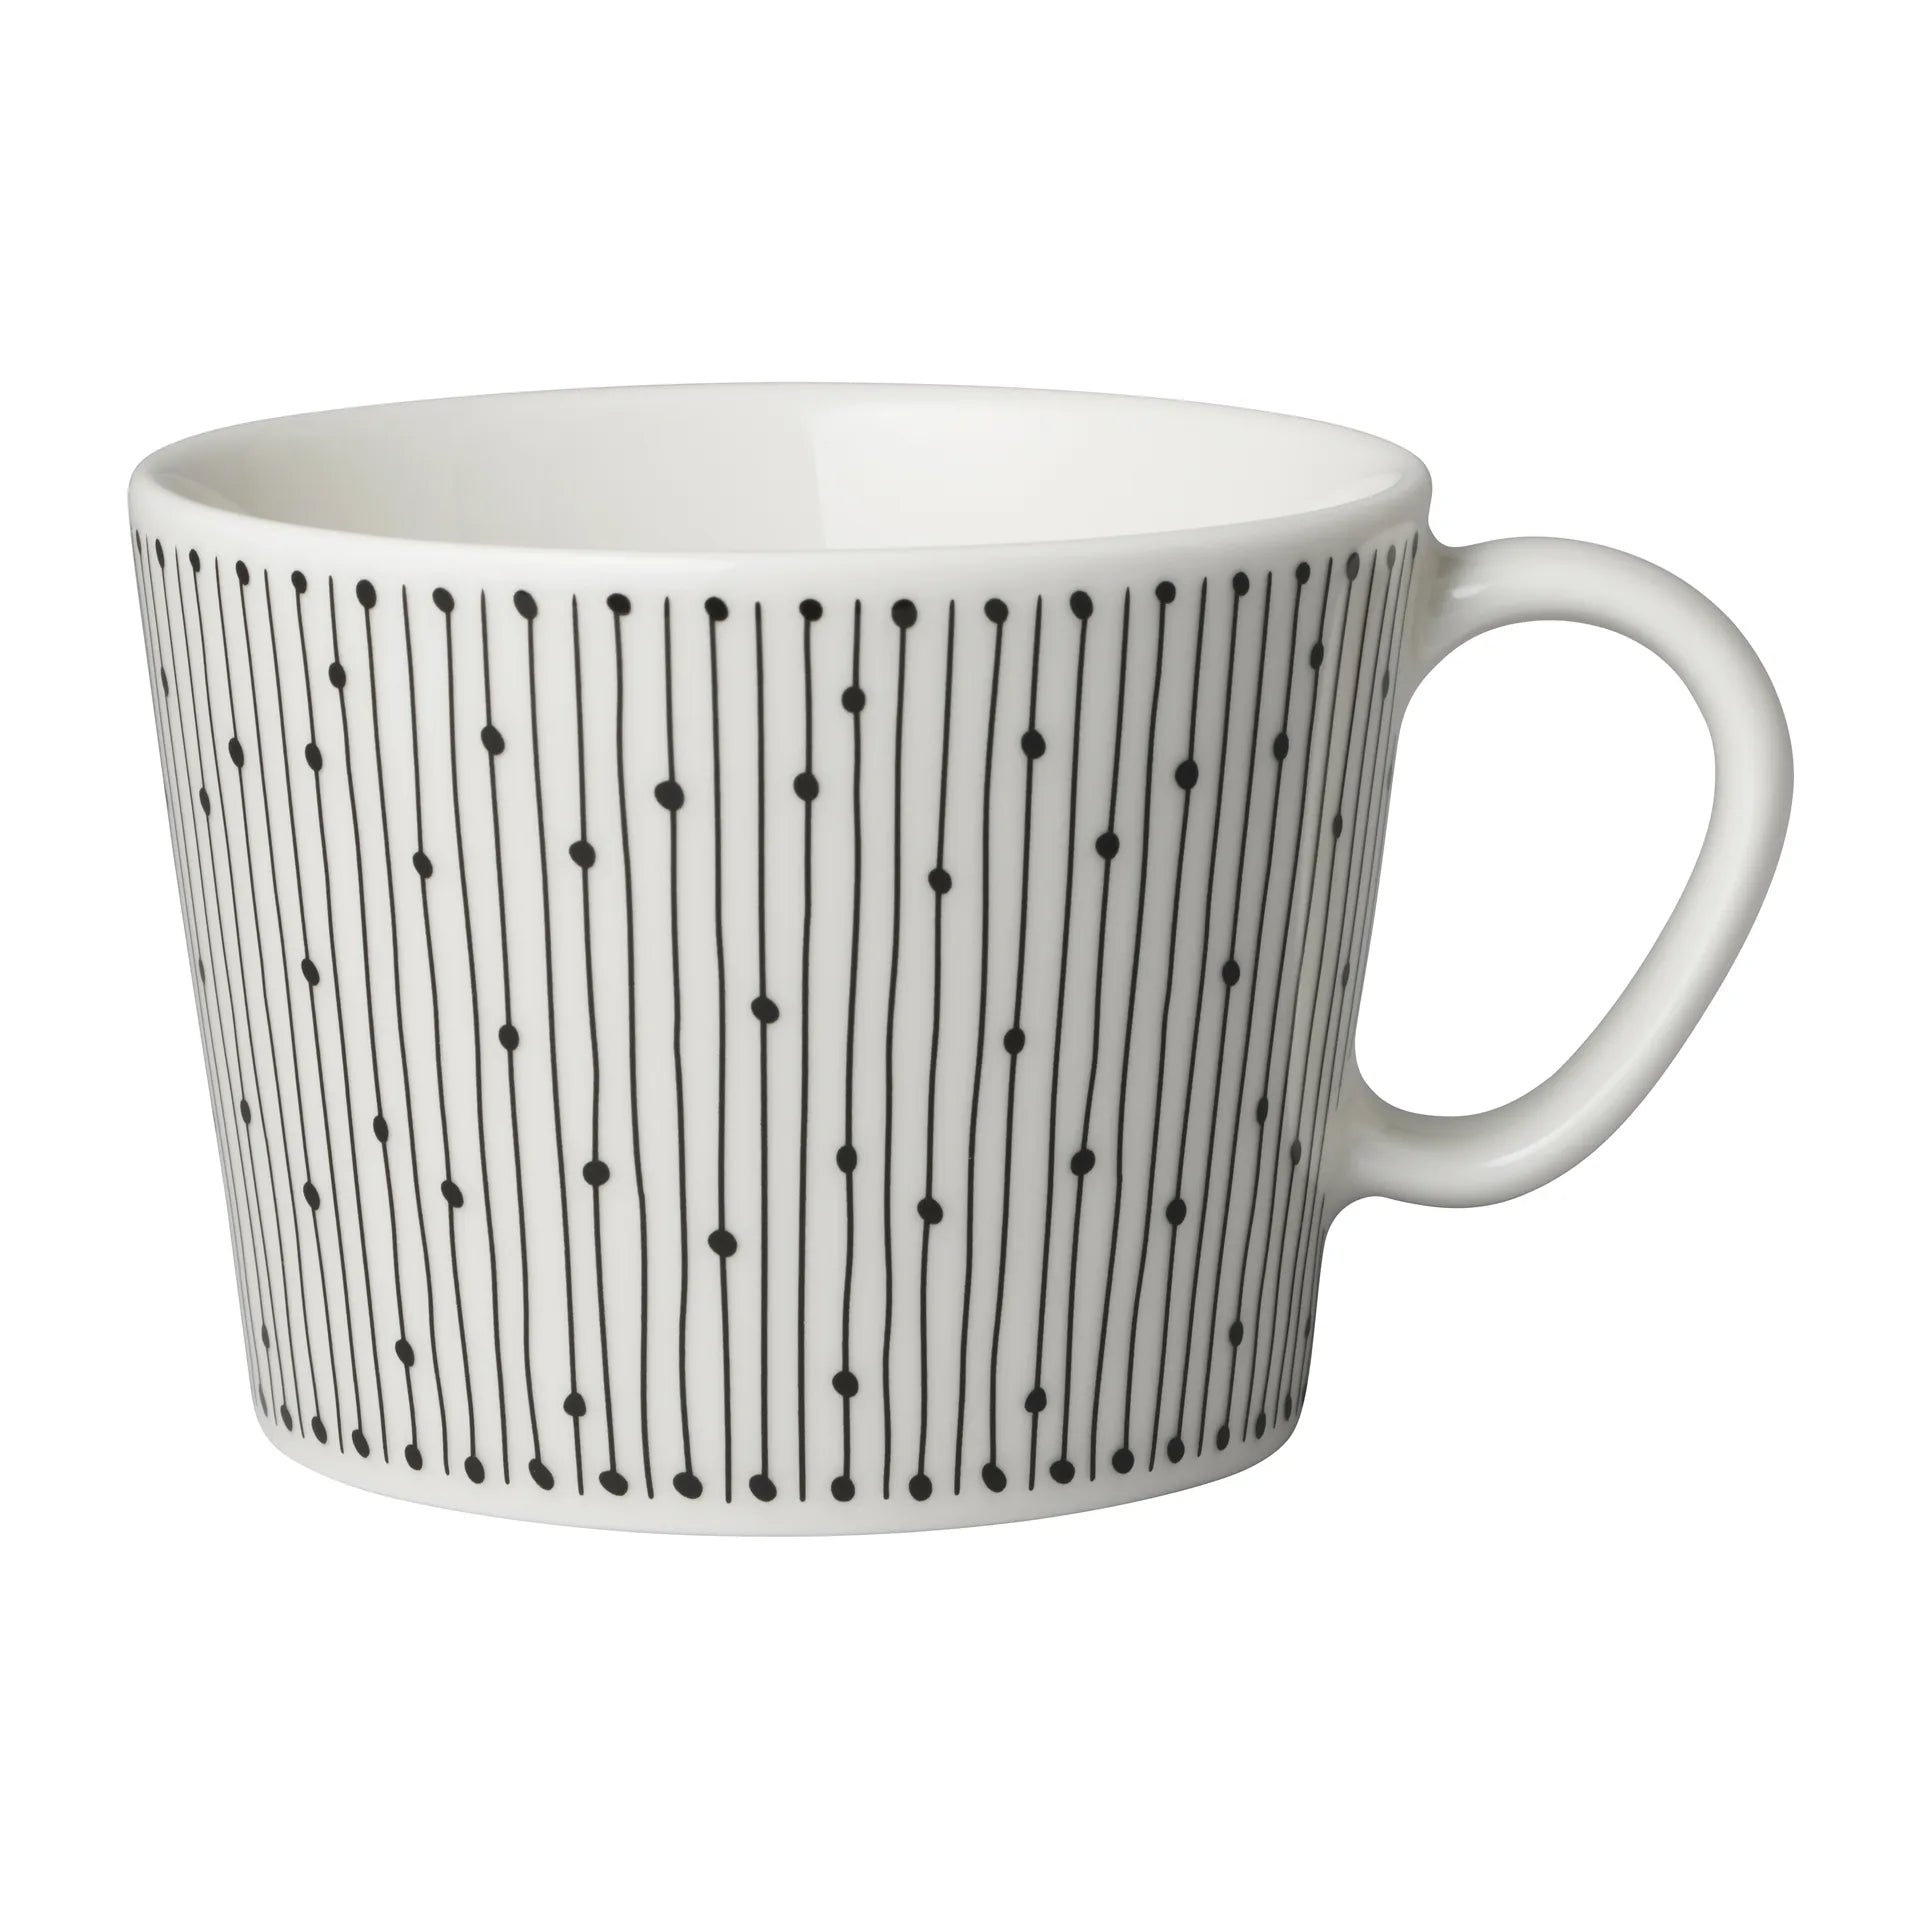 Mainio Sarastus cup 17 cl - Black-white